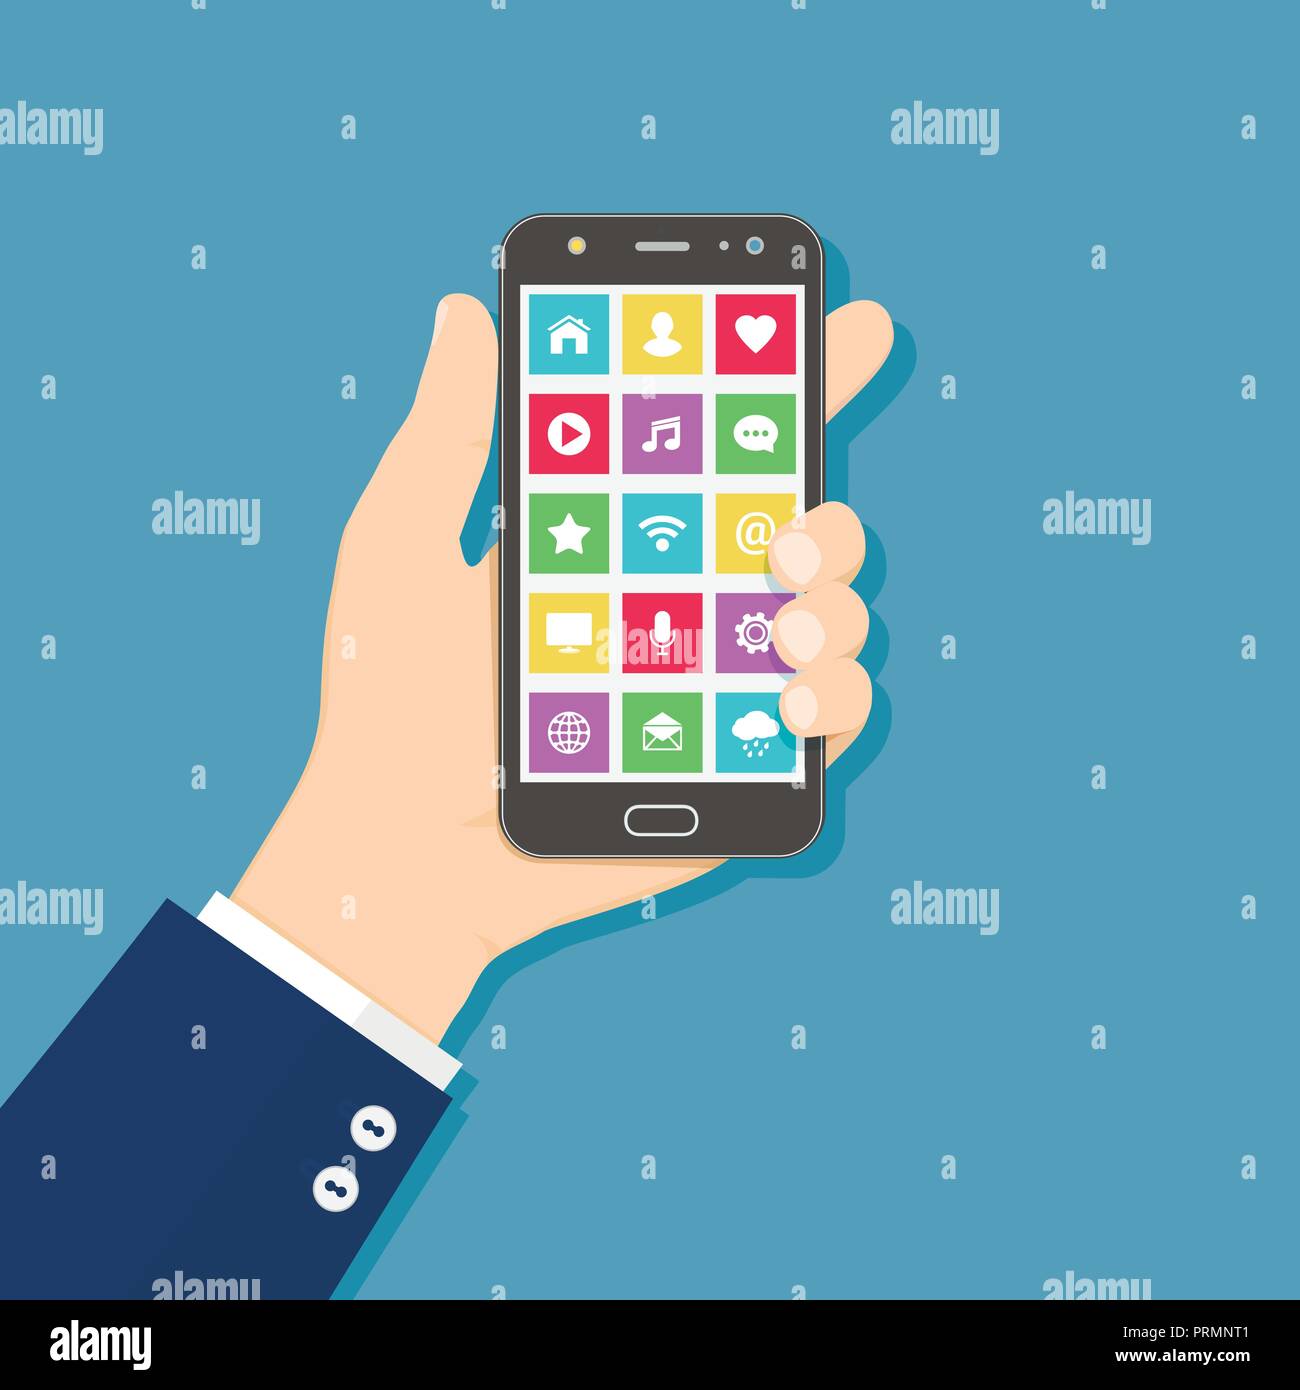 Hand holding mobile phone avec des icônes d'application sur l'écran. Concept design plat. Illustration de Vecteur